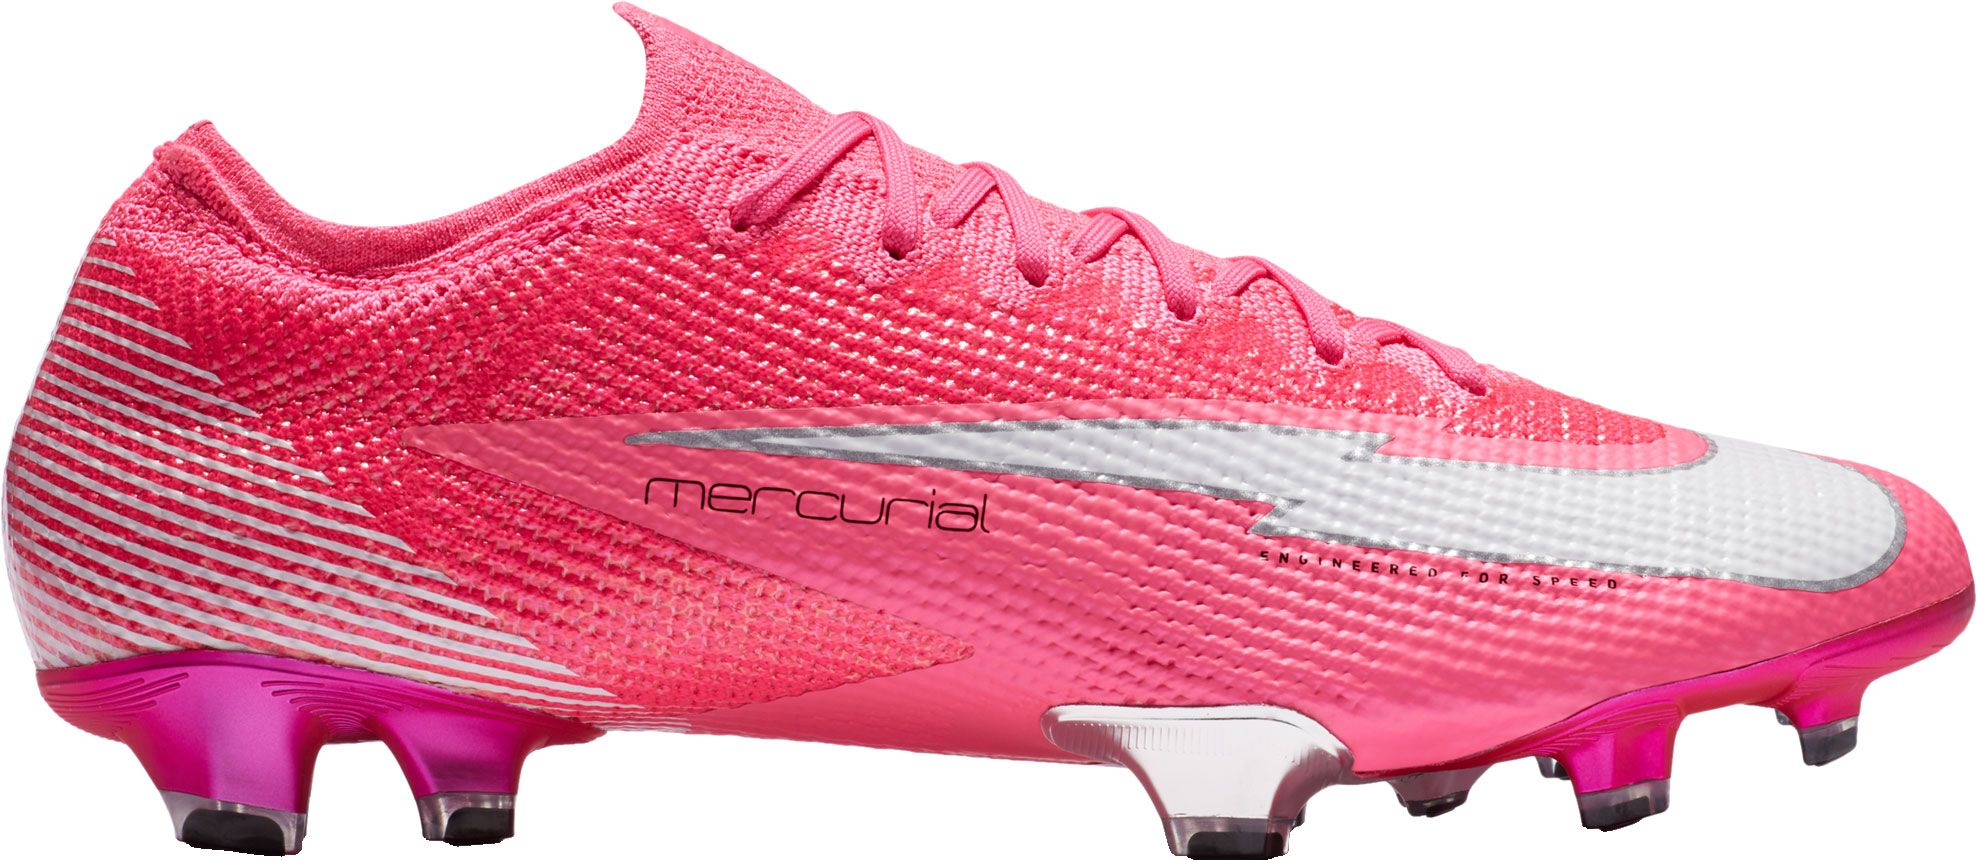 Nike Mercurial Vapor 13 Elite Mbappé Rosa FG Soccer Cleats | DICK'S  Sporting Goods